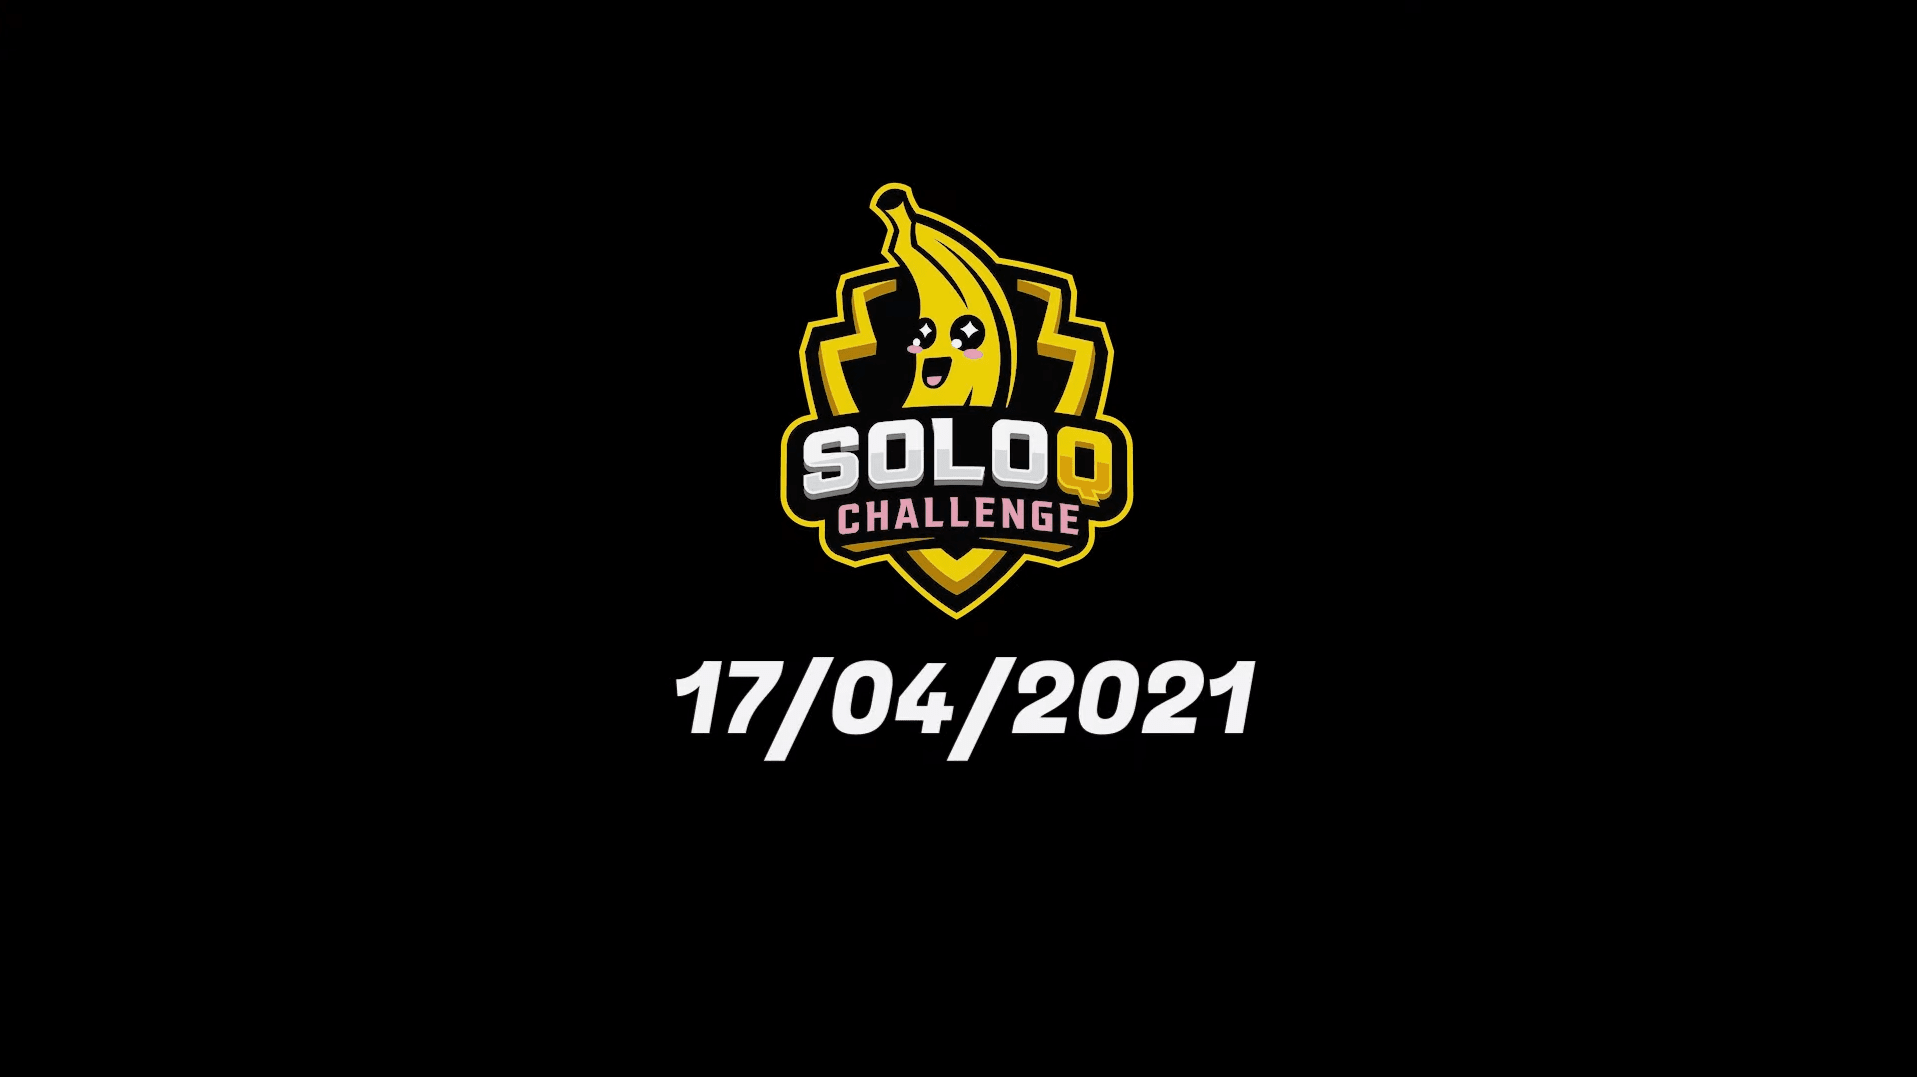 SoloQ Challenge 2021